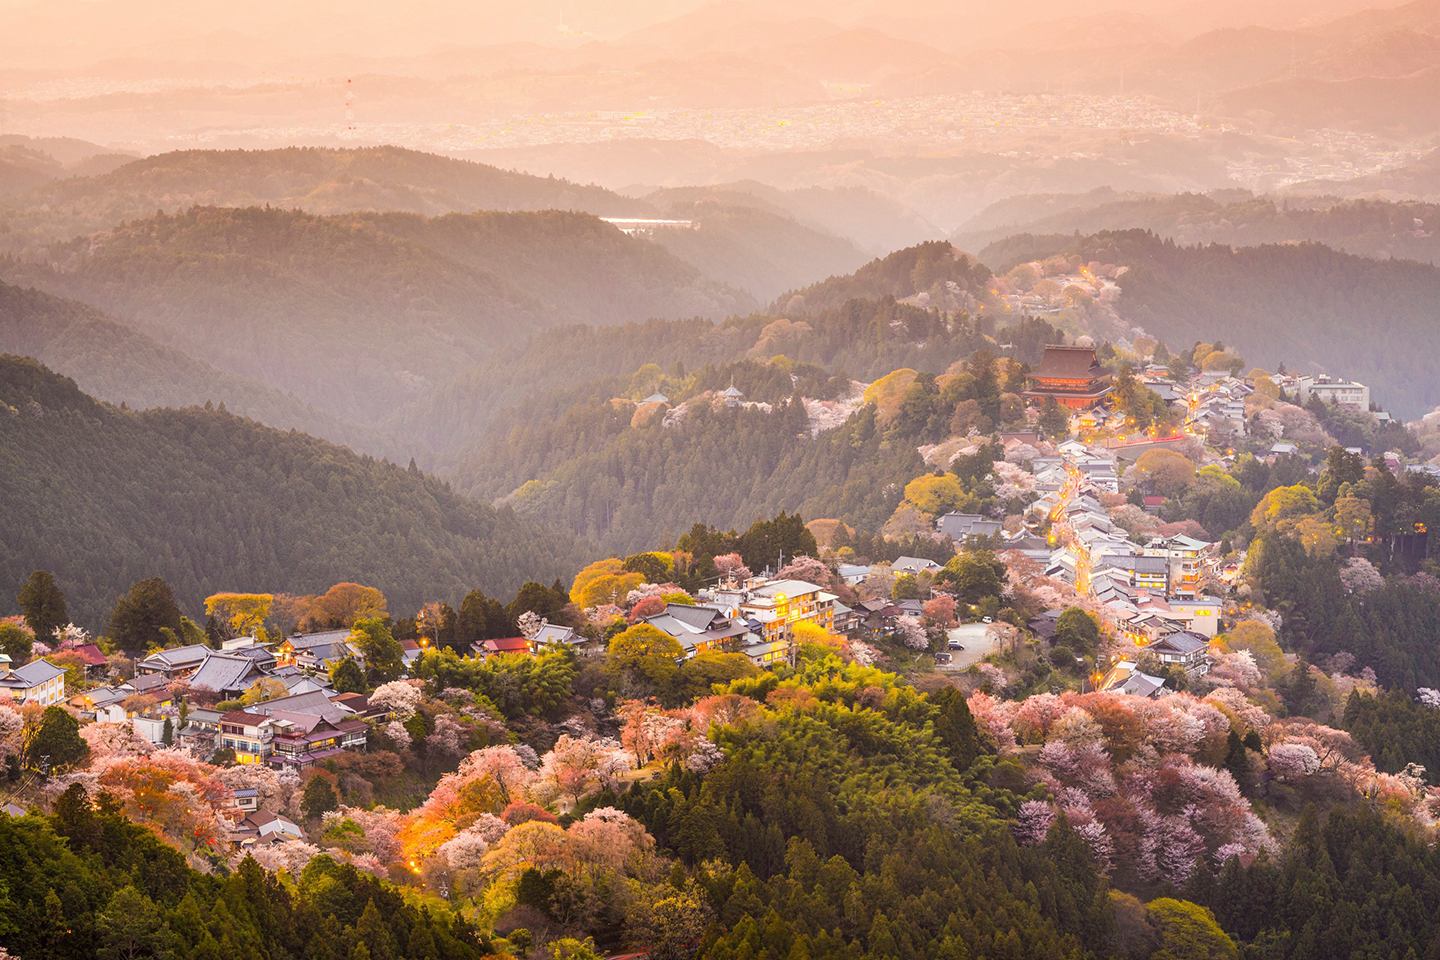 Los 15 Mejores Paisajes de Japón que Tienes que Visitar